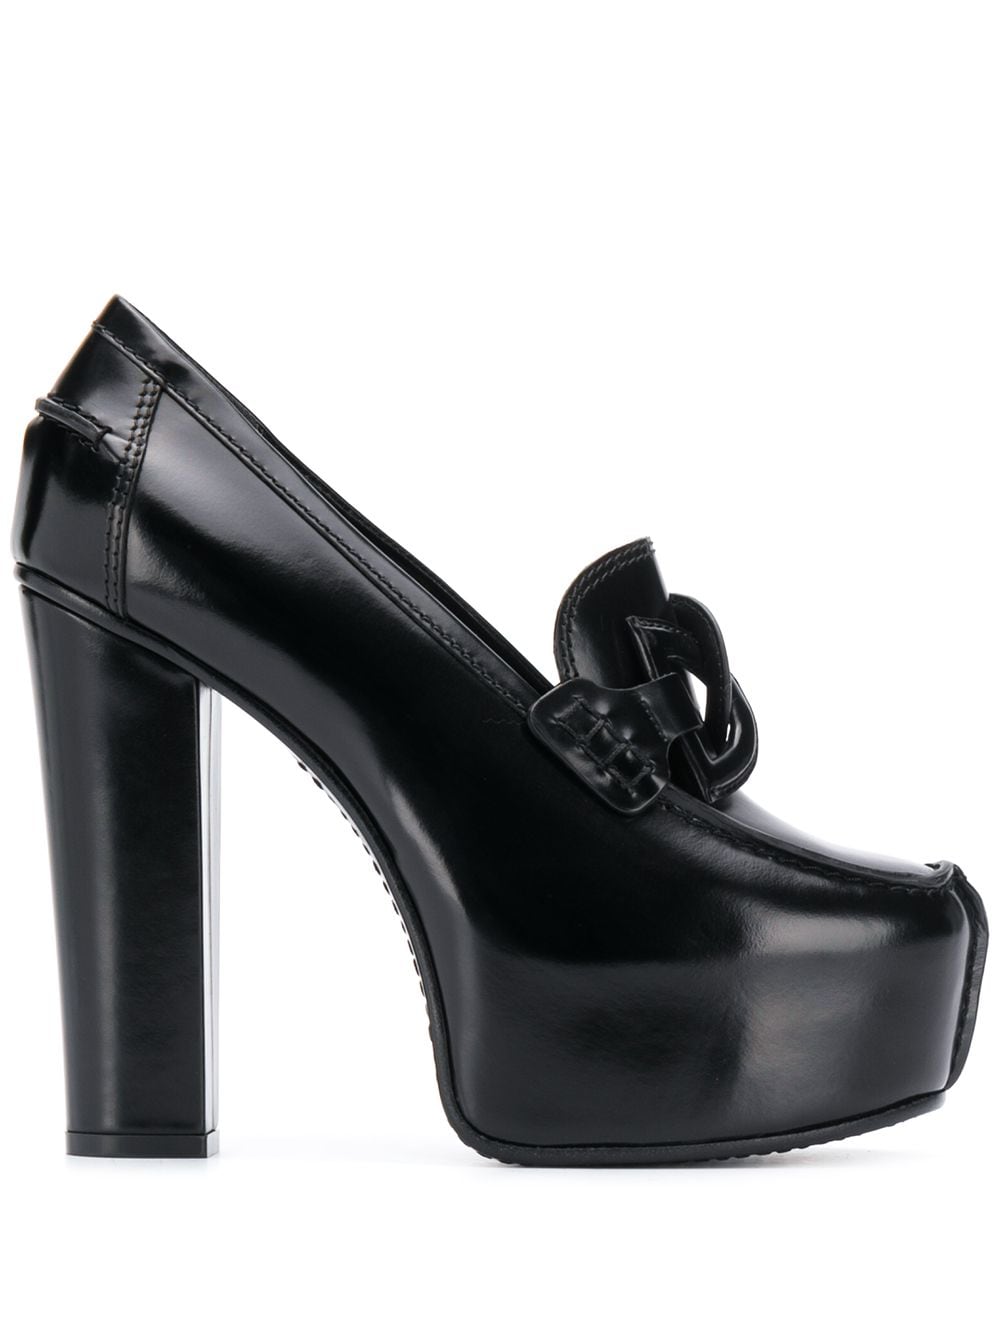 фото Givenchy туфли на платформе